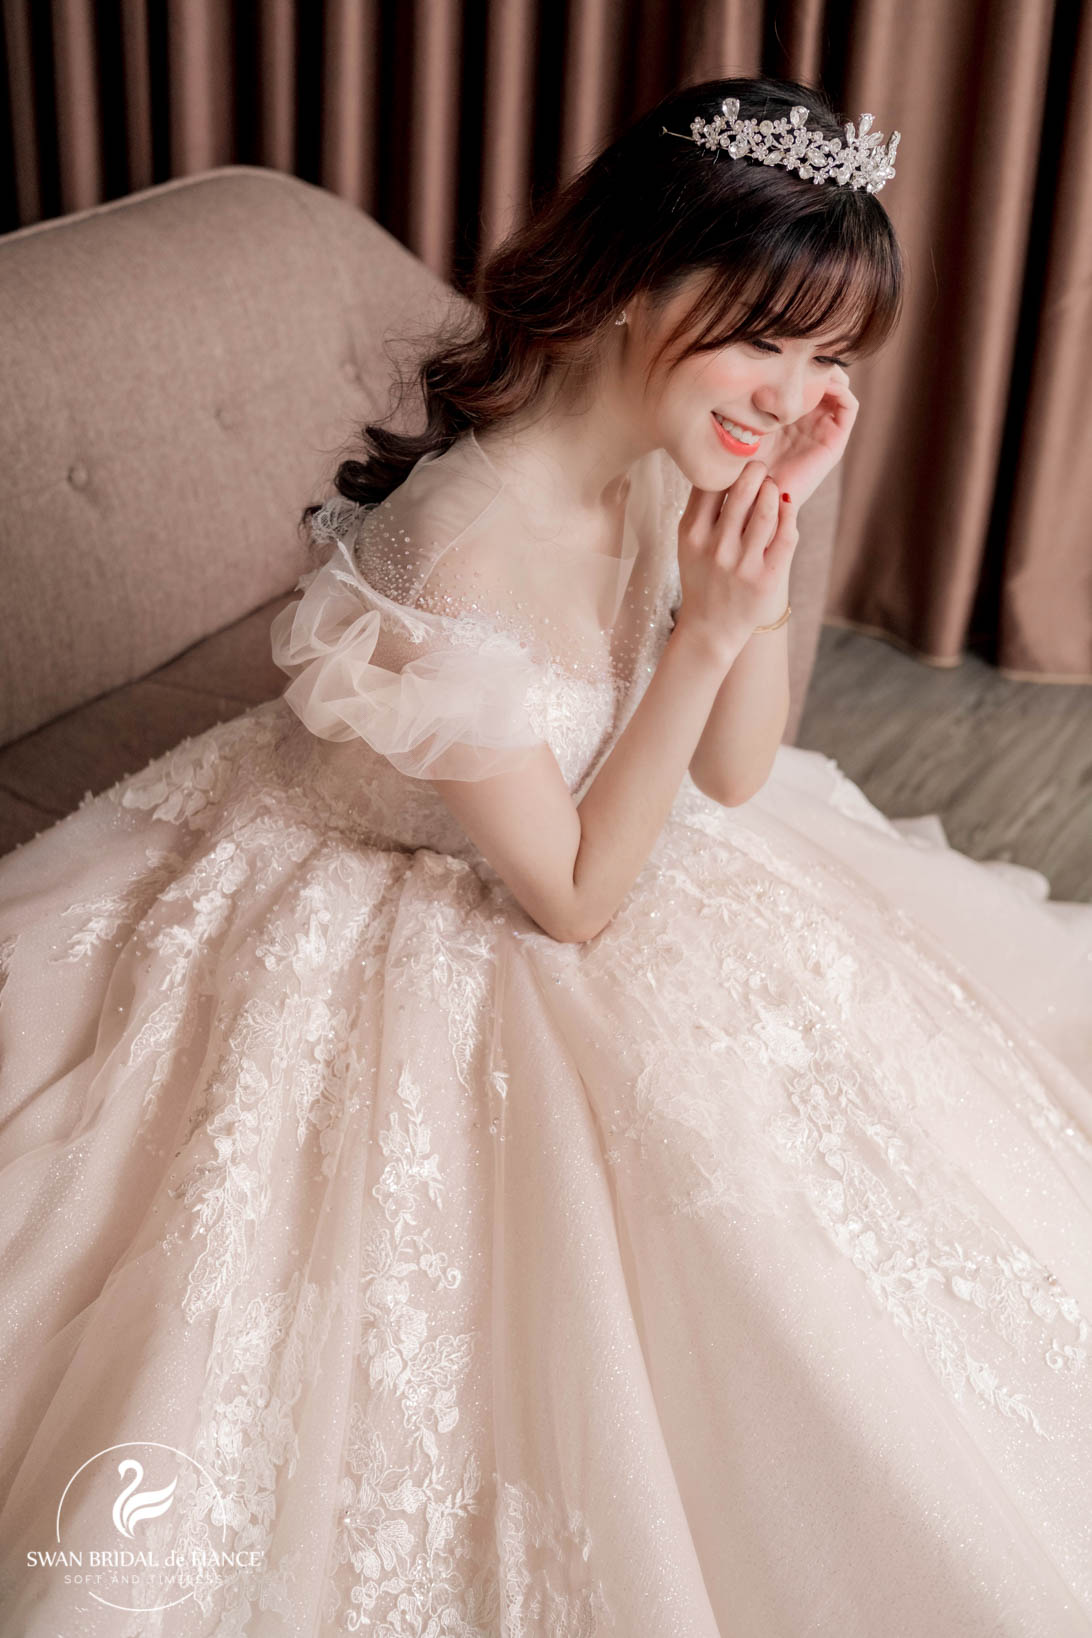 MC đa tài Chủ Thùy Linh xinh đẹp như một nàng công chúa trong váy cưới của SWAN Bridal